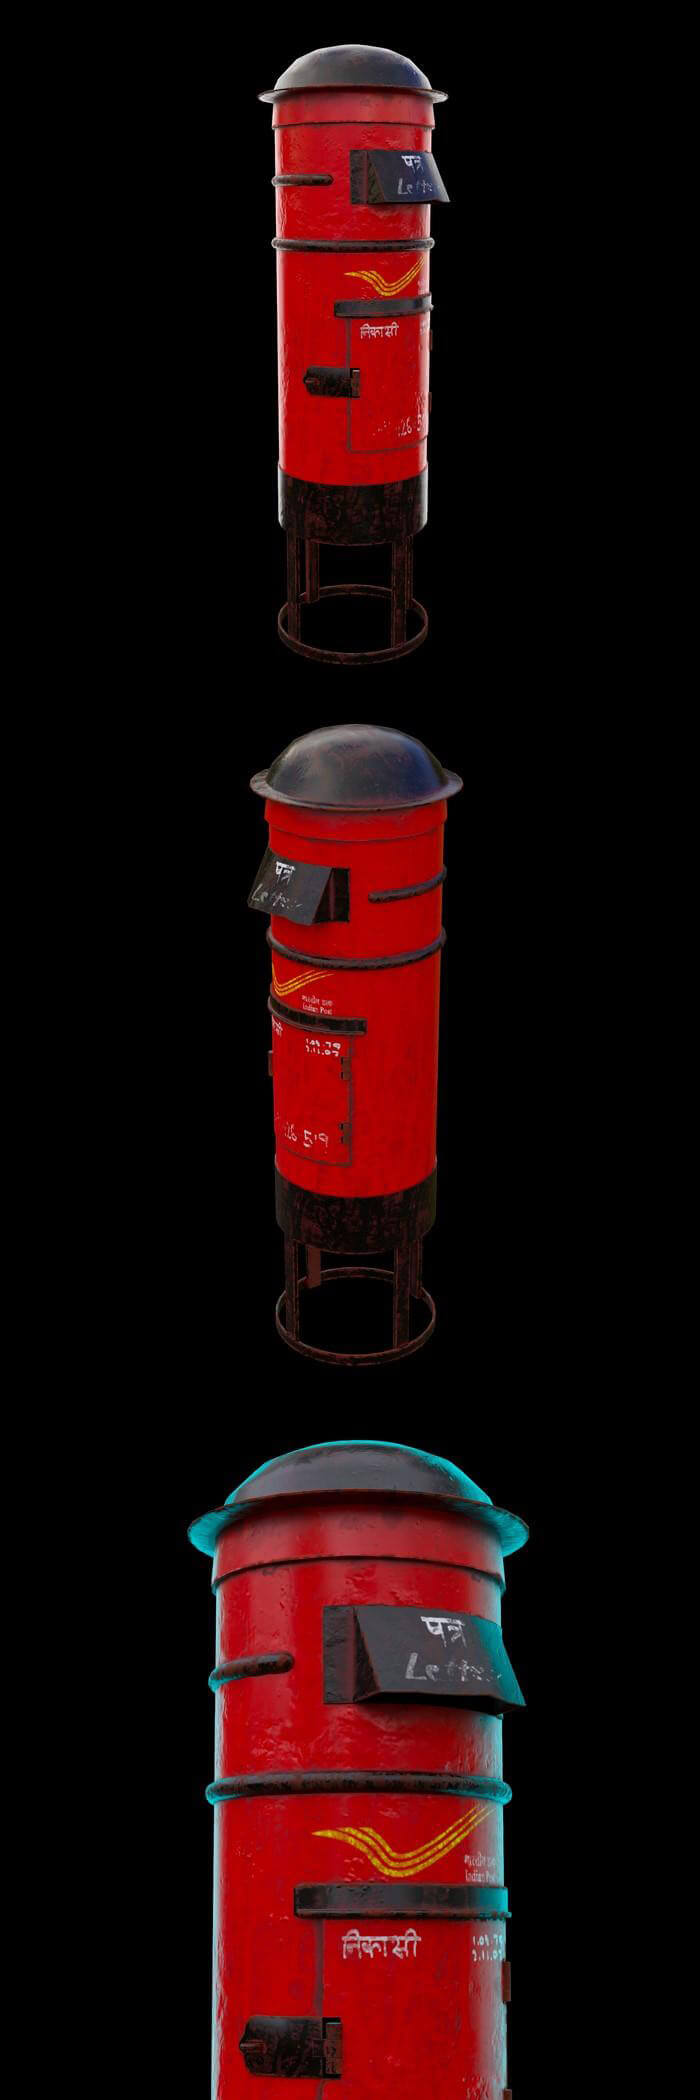 印度邮政信箱3D模型（OBJ,FBX,MAX）